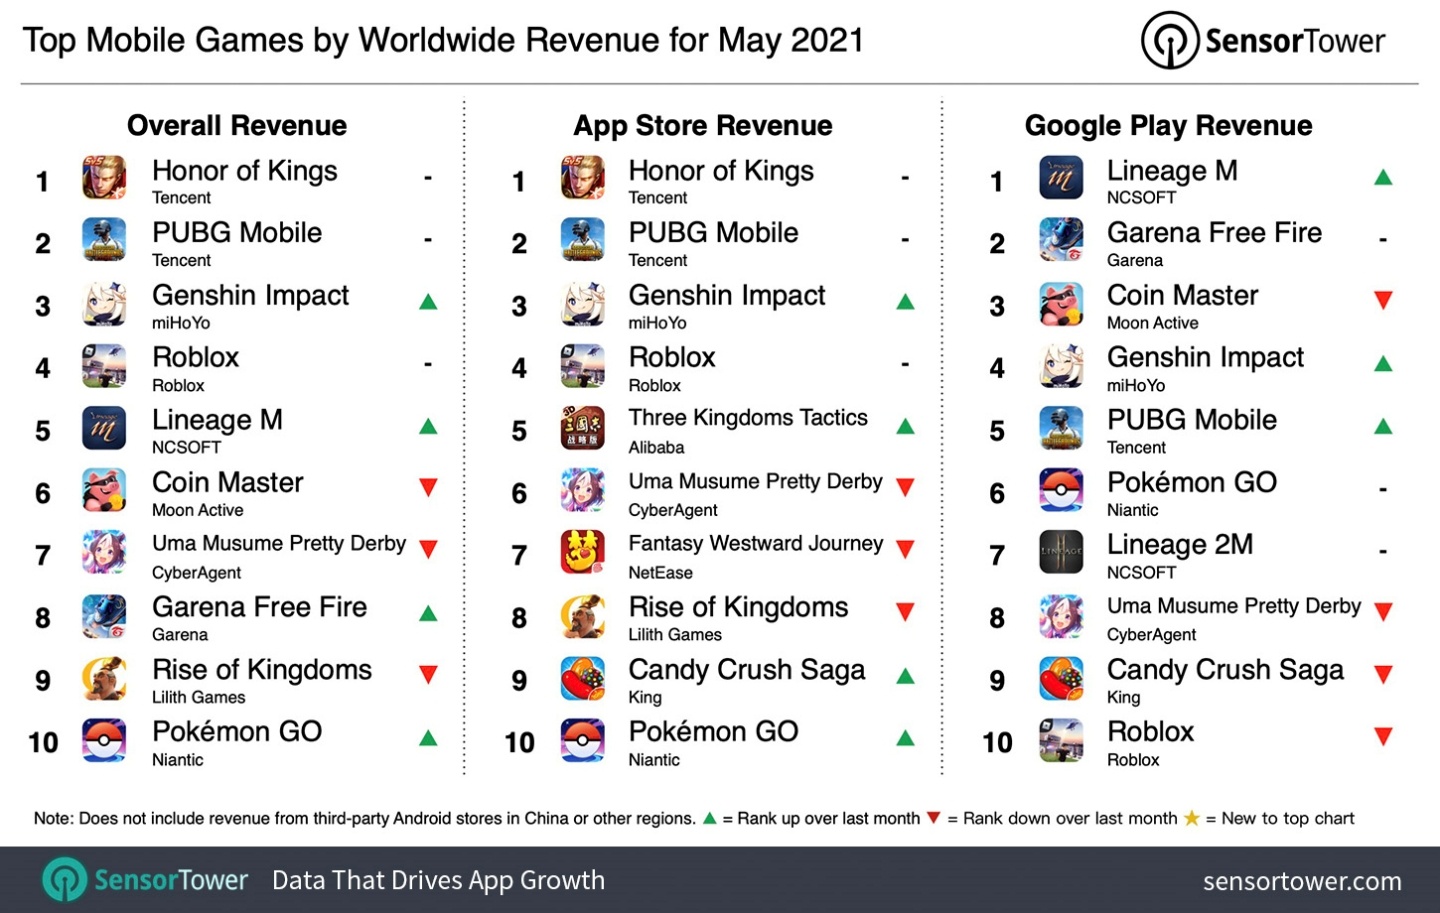 5 月全球下載量最高的 App 竟是獵奇的『 頭髮 』遊戲？營收最高則是『 王者榮耀 』